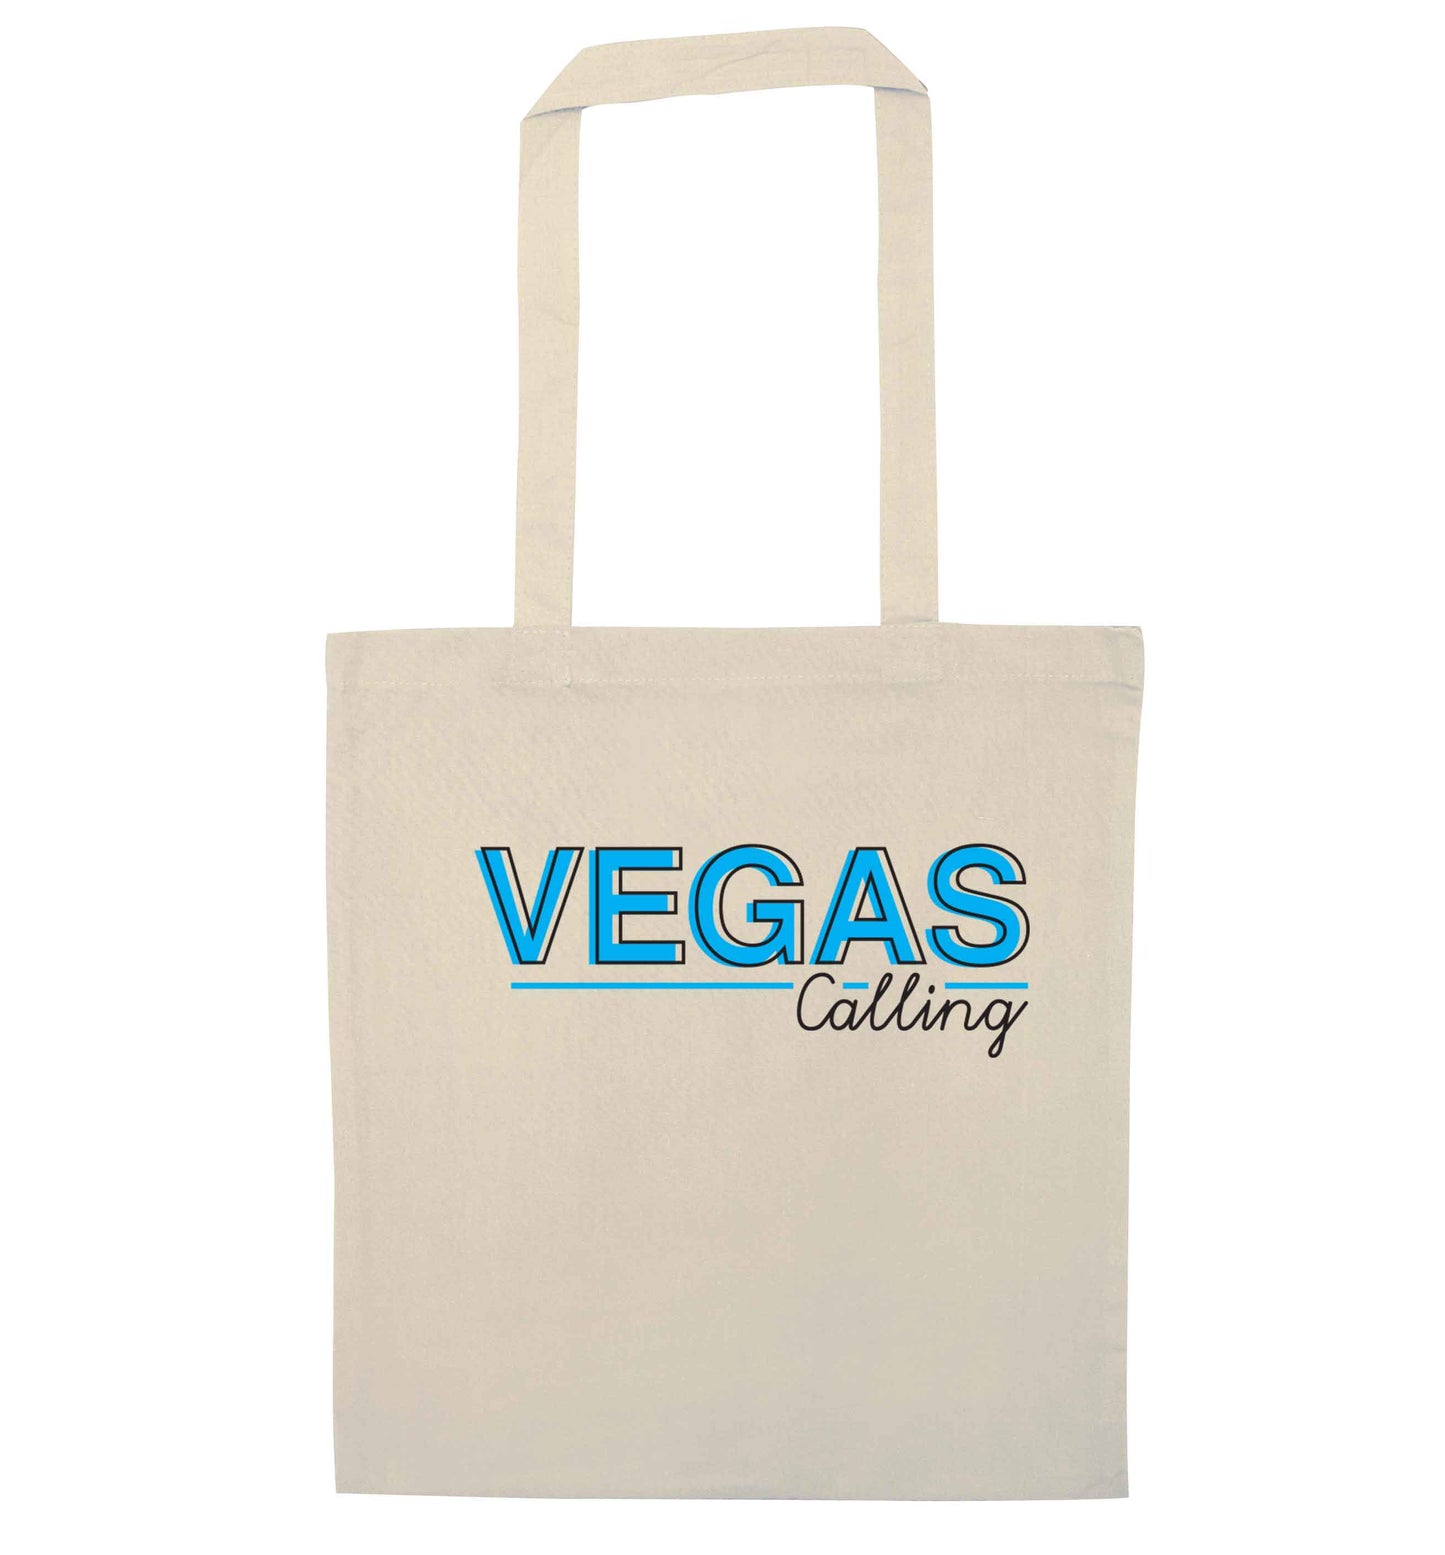 Vegas calling natural tote bag